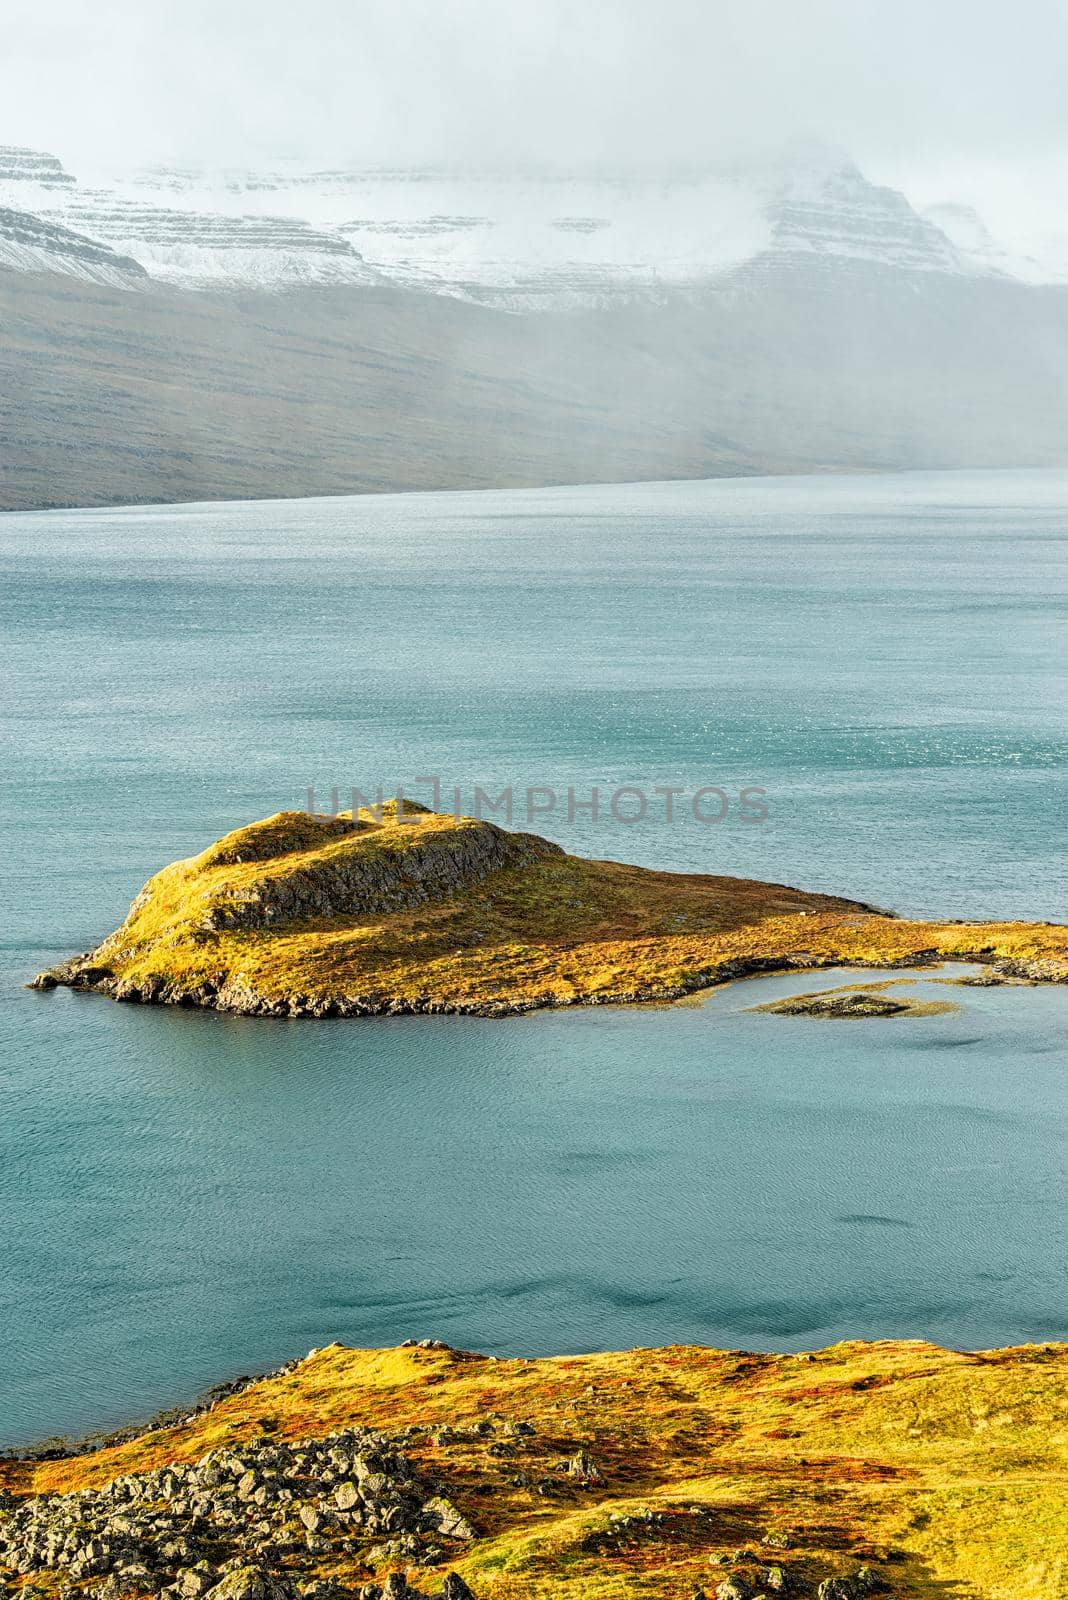 Eskifjordur on the east side of Iceland by LuigiMorbidelli